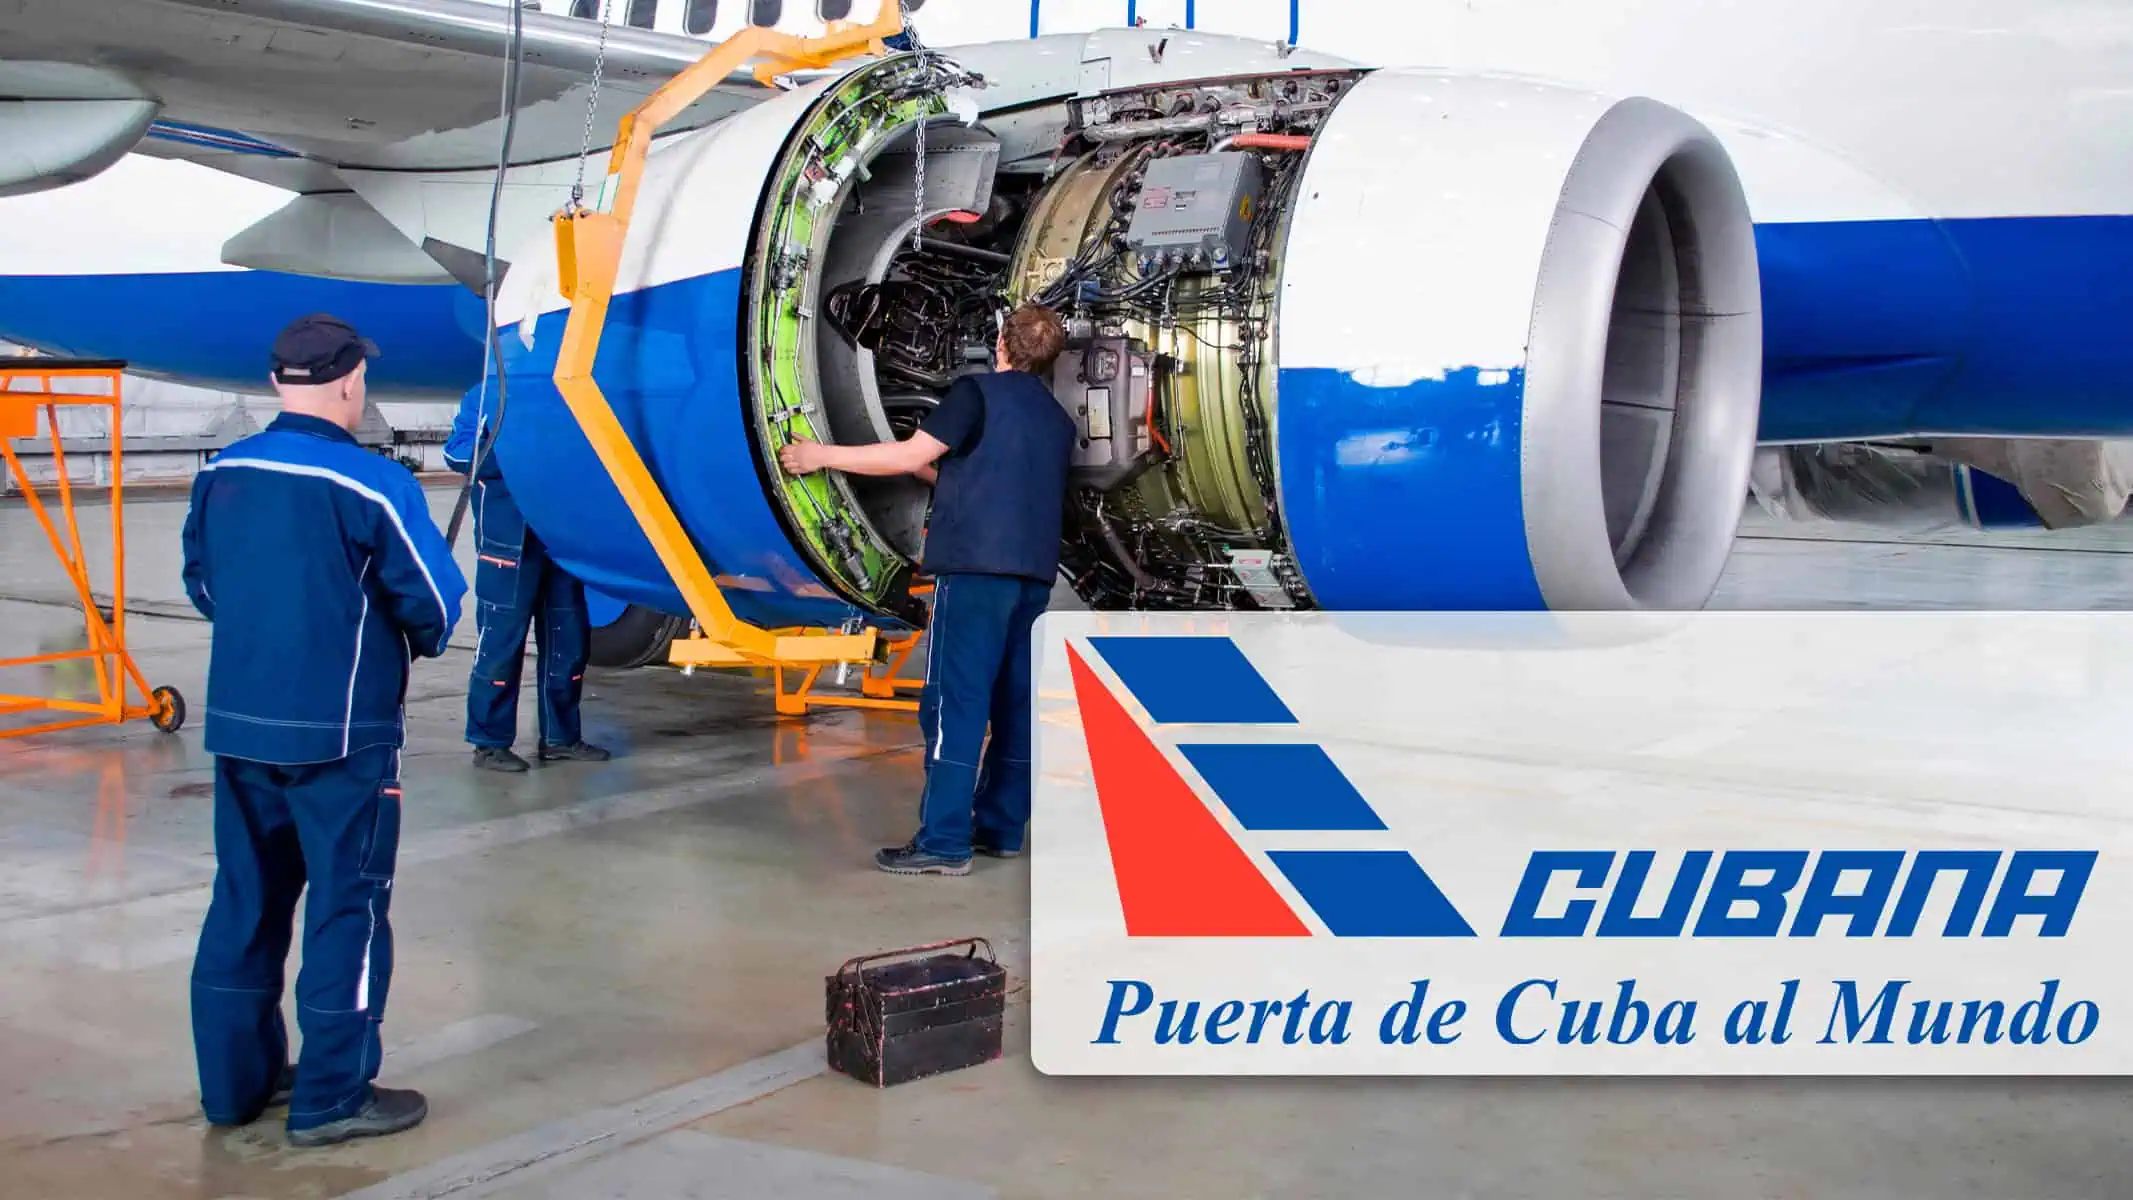 ¡Atención! Cubana de Aviación Ofrece Curso de Mantenimiento de Aeronaves con Salario Durante el Estudio